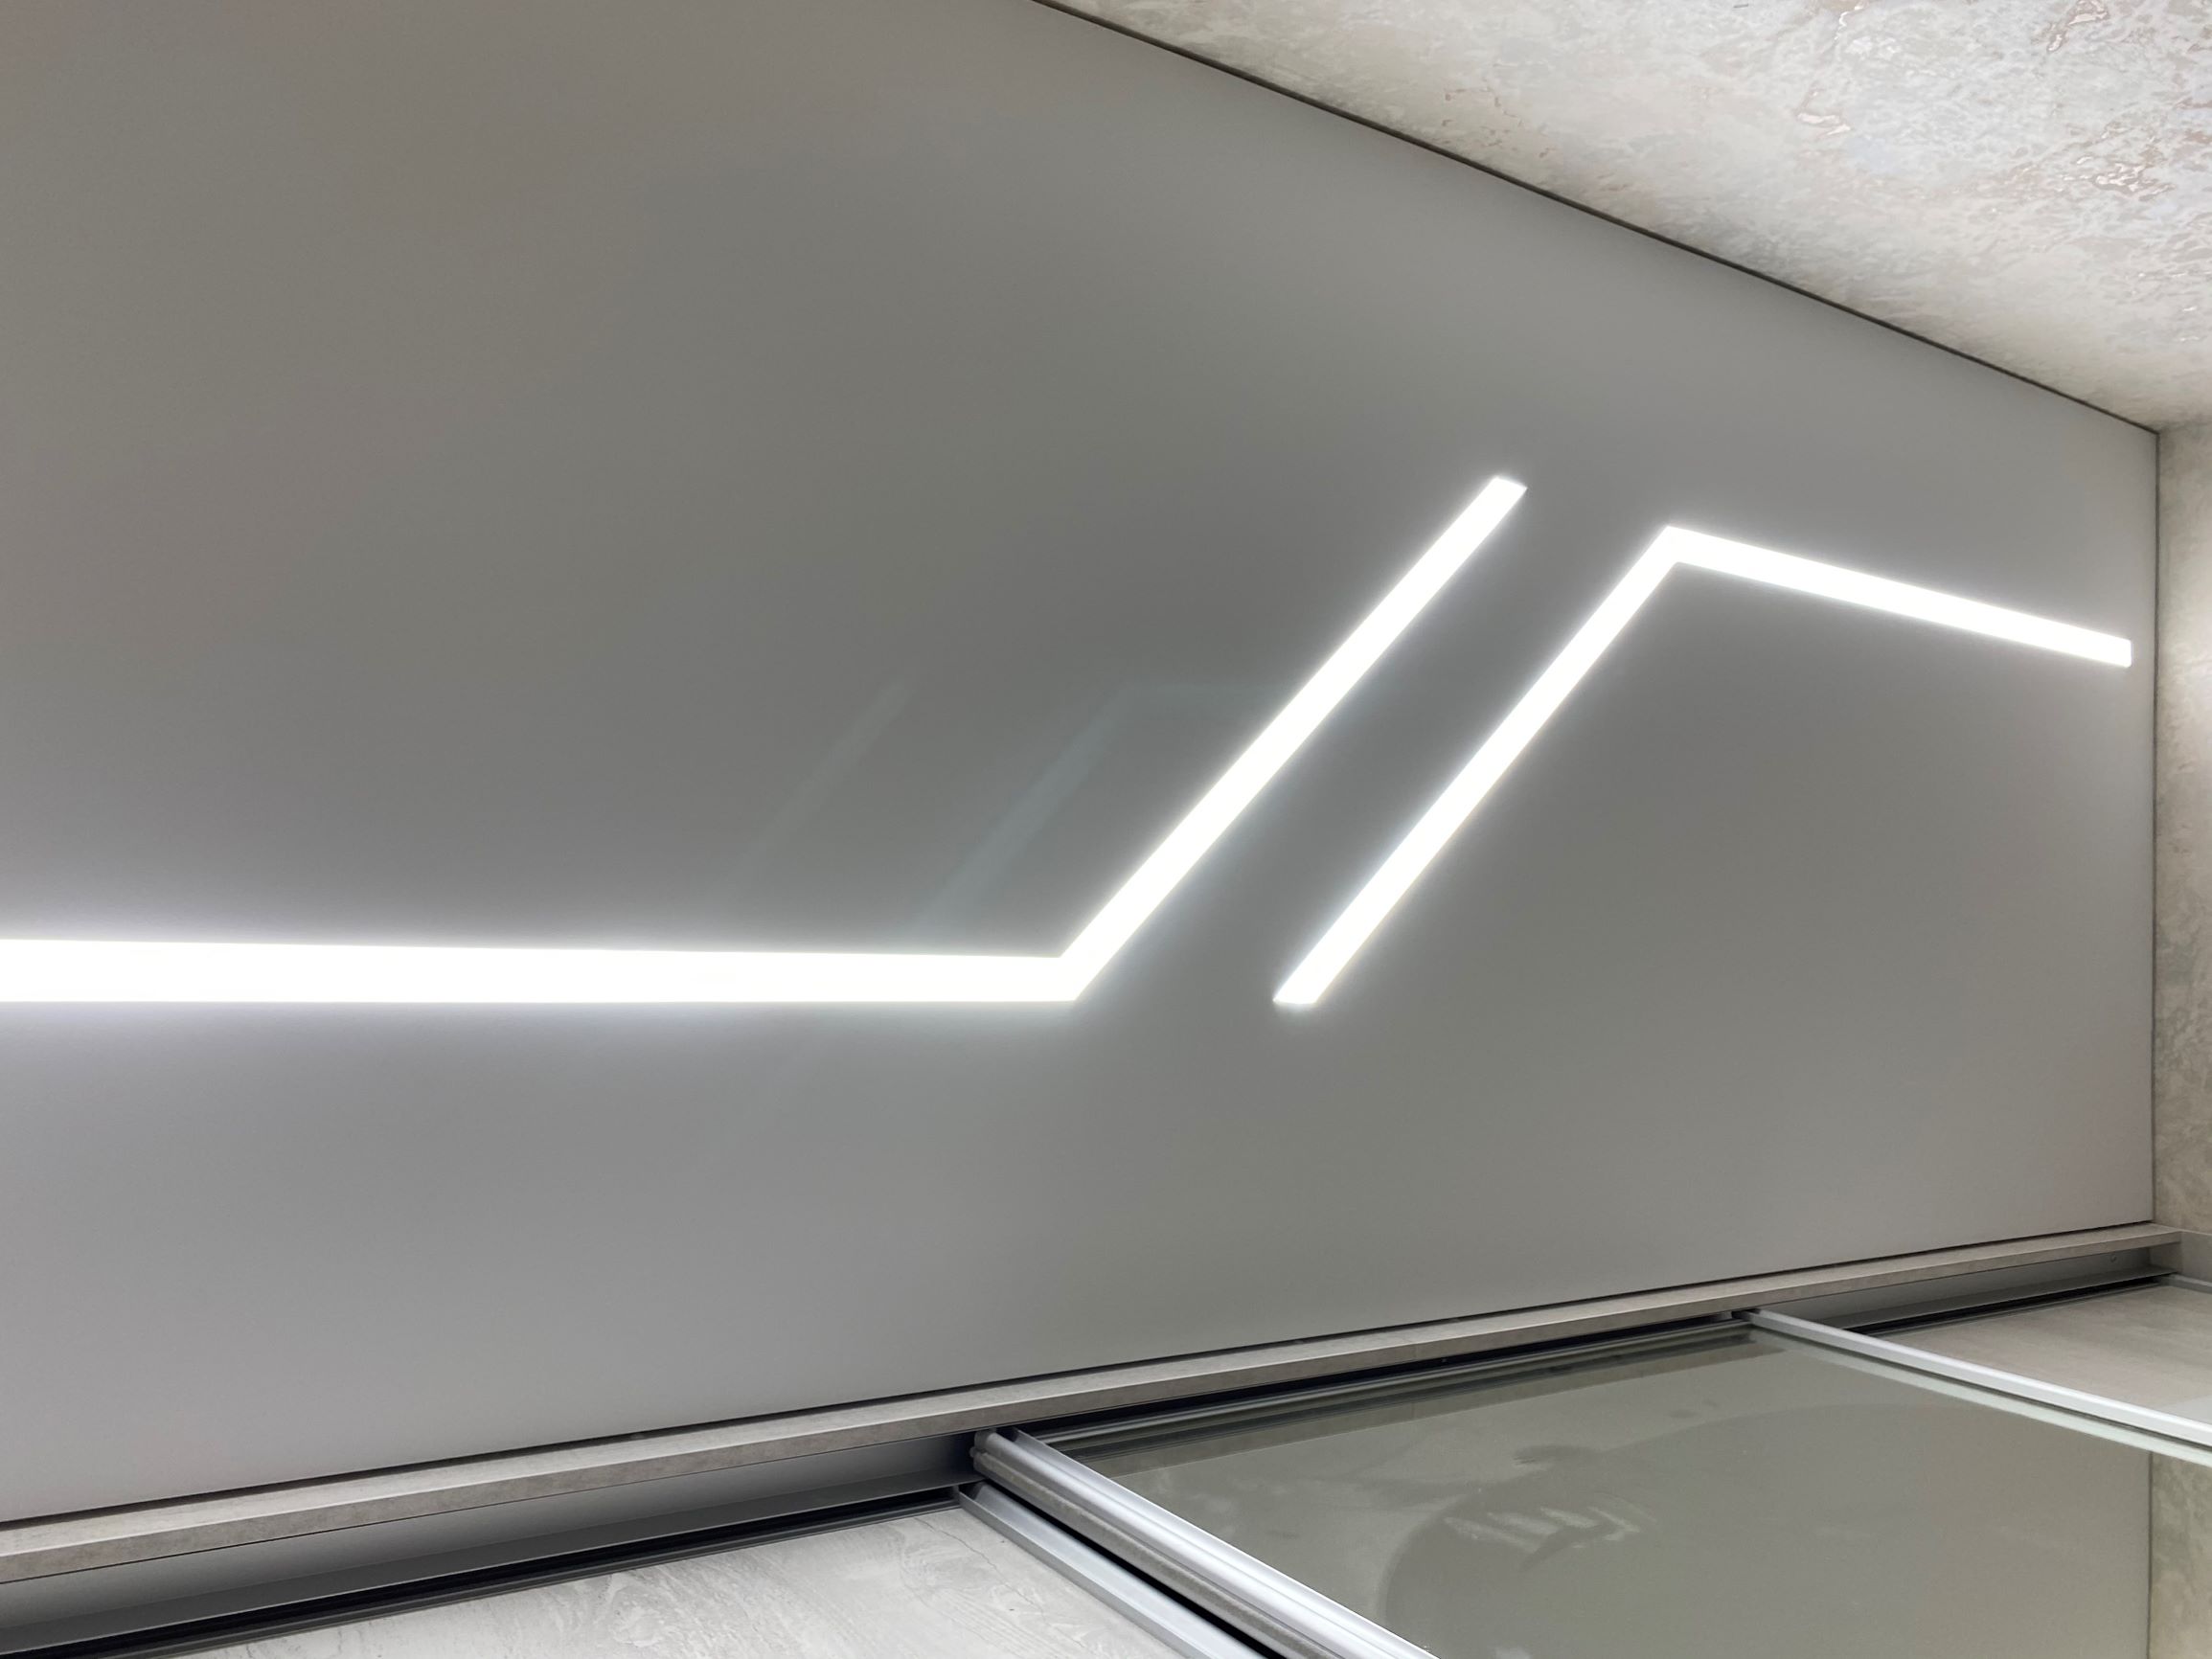 Натяжной потолок со световыми линиями от ПоТолковой компании